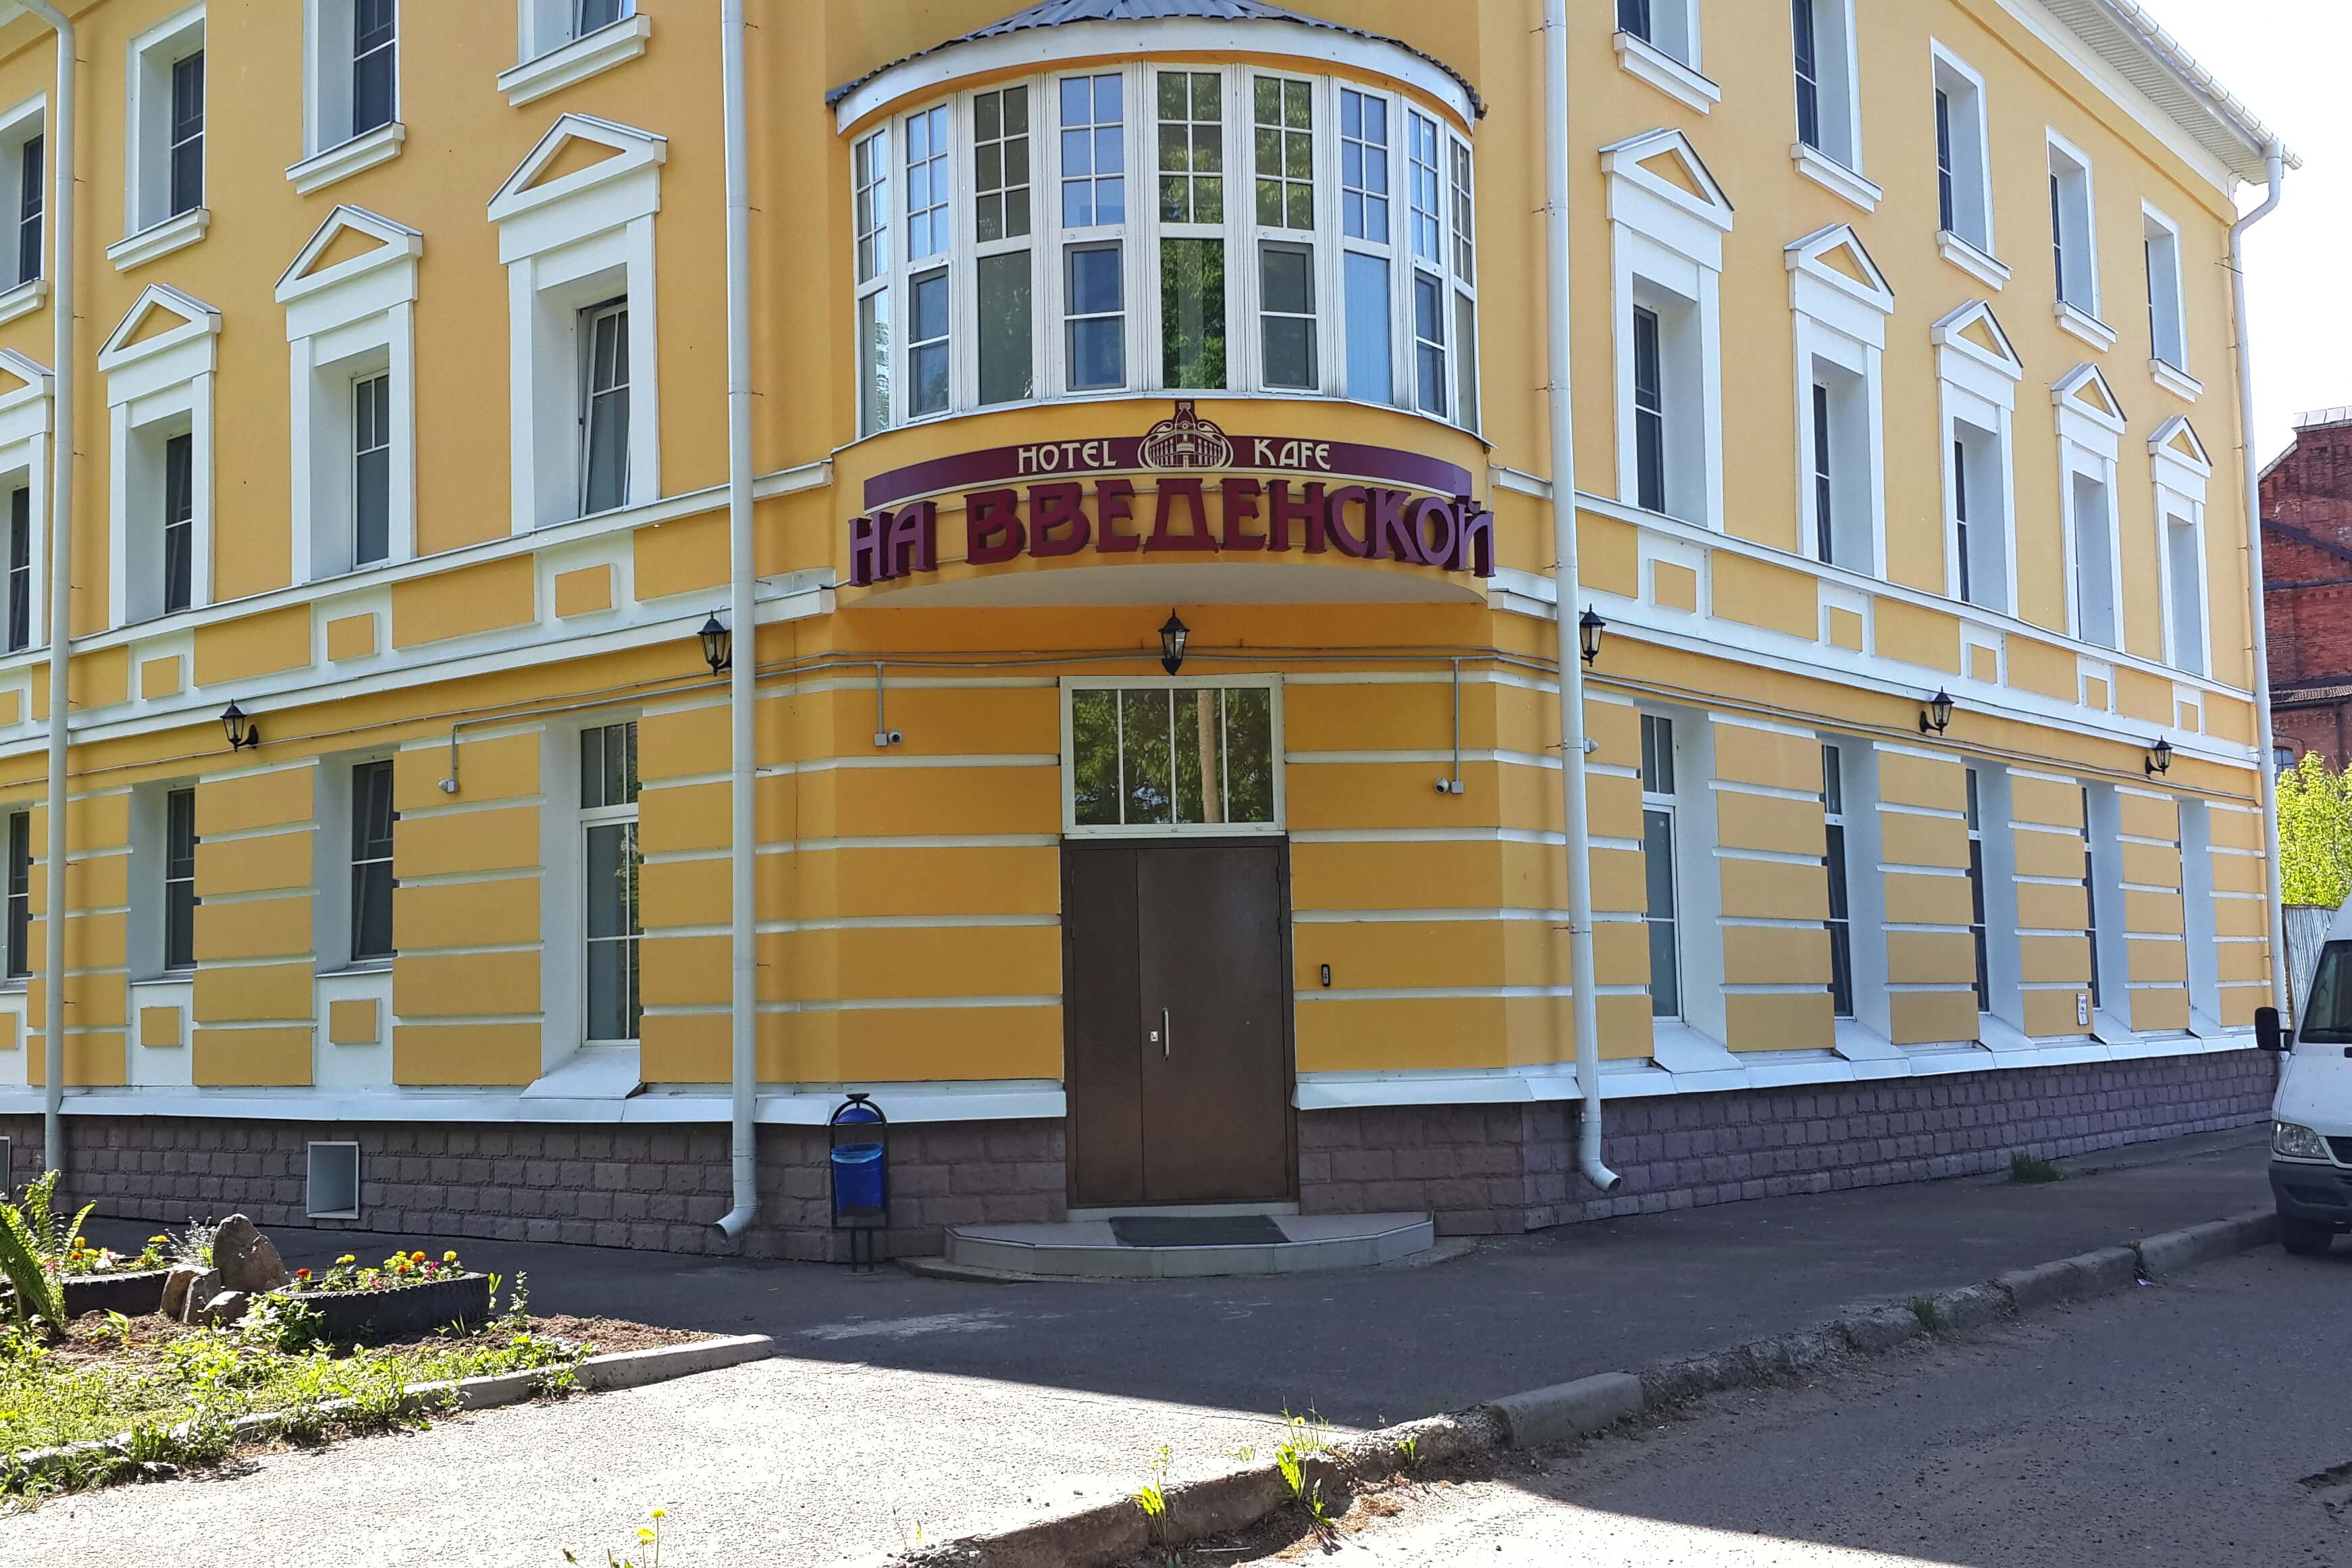 Фасад здания выкрашен в желтый цвет.